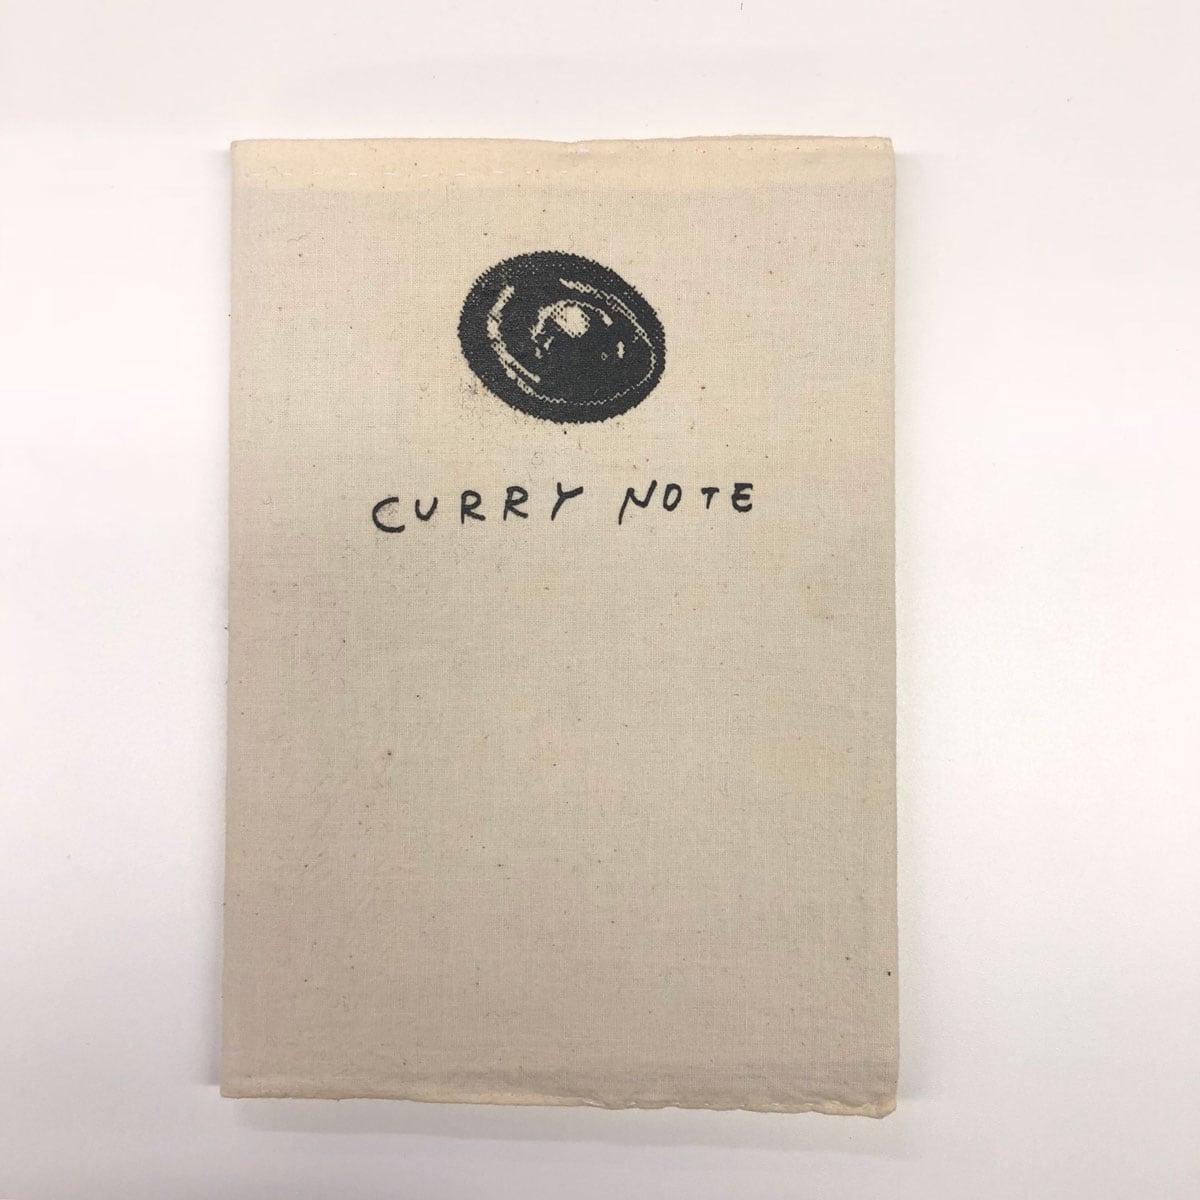 210店舗のカレー屋情報が1冊に。ZINE「CURRY NOTE」の10年間をまとめたスペシャルブックが発売 - Slide:4